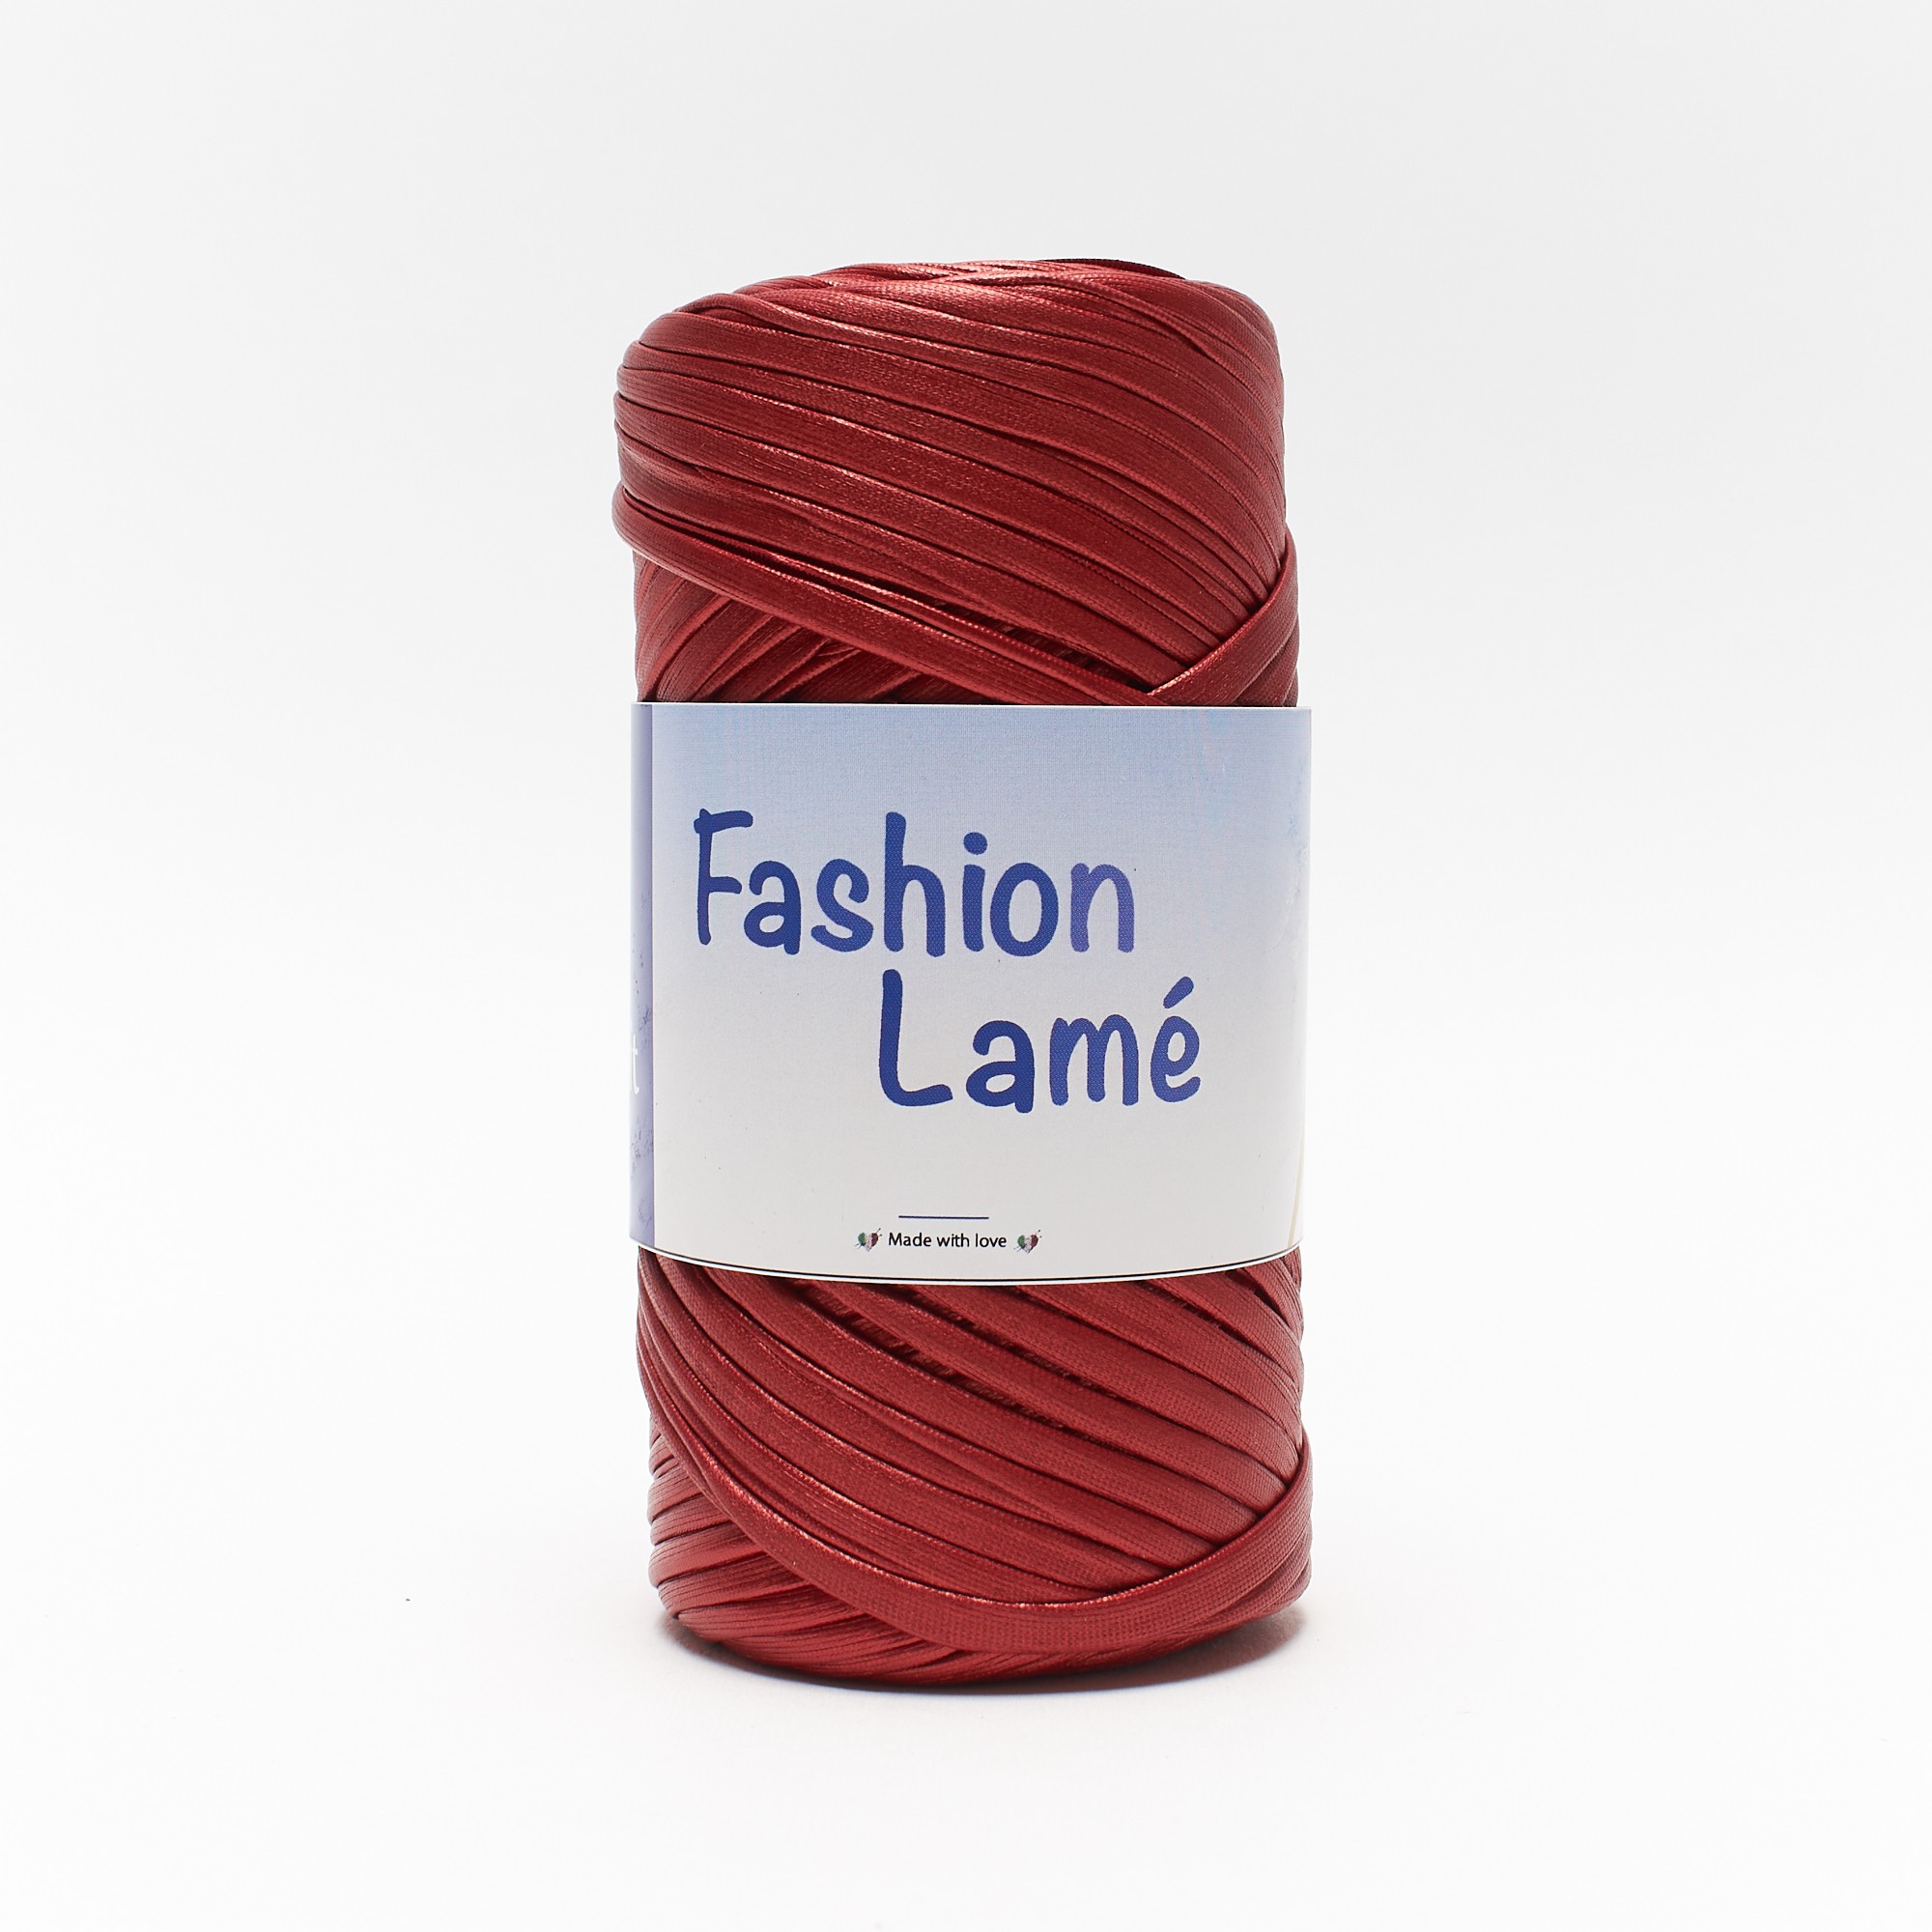 Fashion Lamè by Woolove - Fettuccia effetto laminato - Tricot Cafè